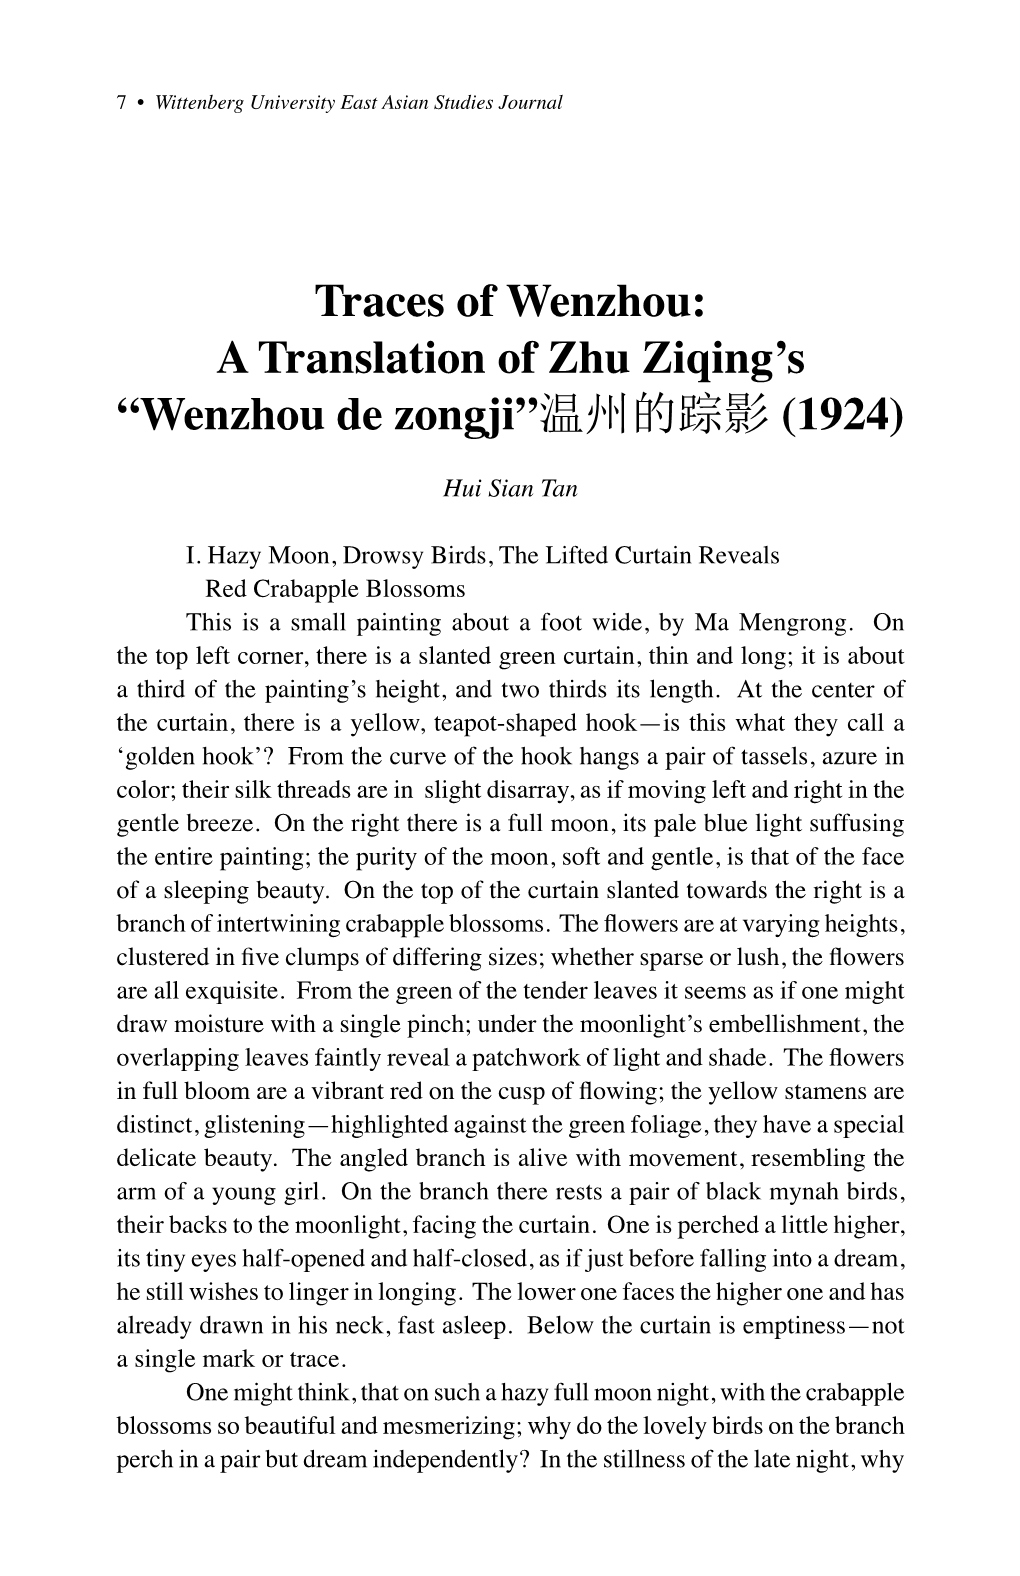 A Translation of Zhu Ziqing's “Wenzhou De Zongji”温州的踪影